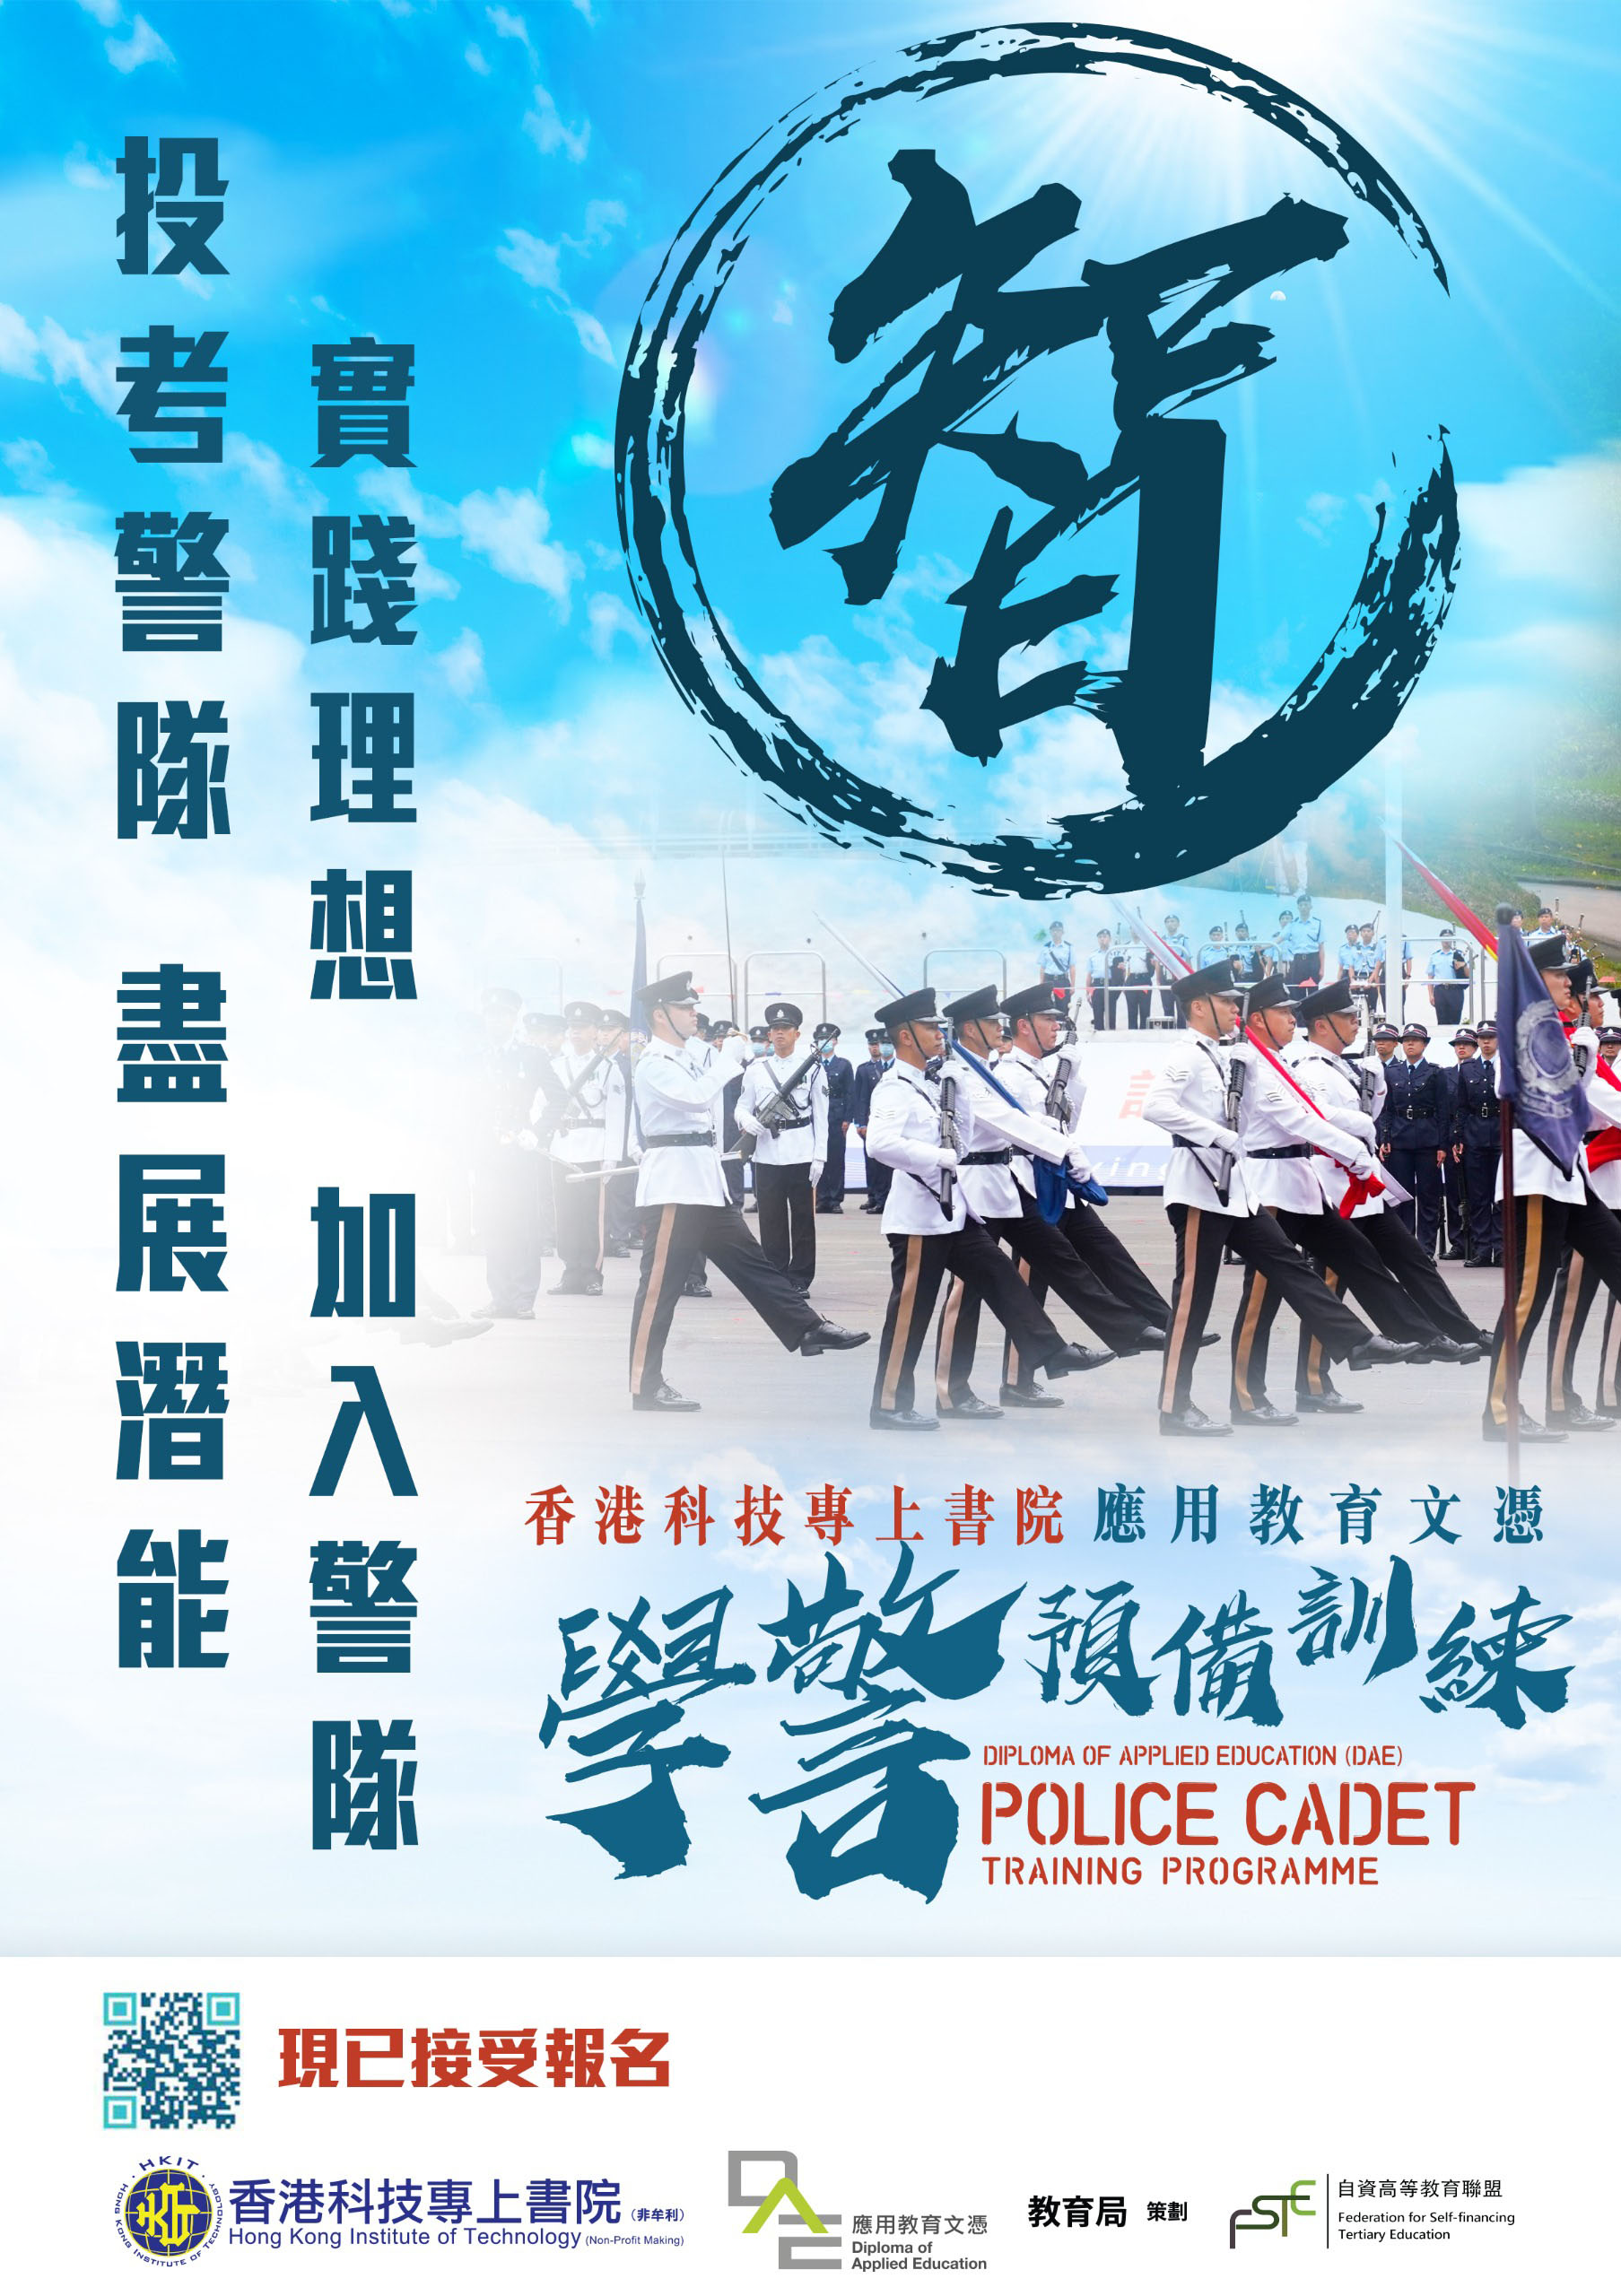 警隊 X 科專(HKIT) 合辦《學警預備訓練 應用教育文憑課程DAE》